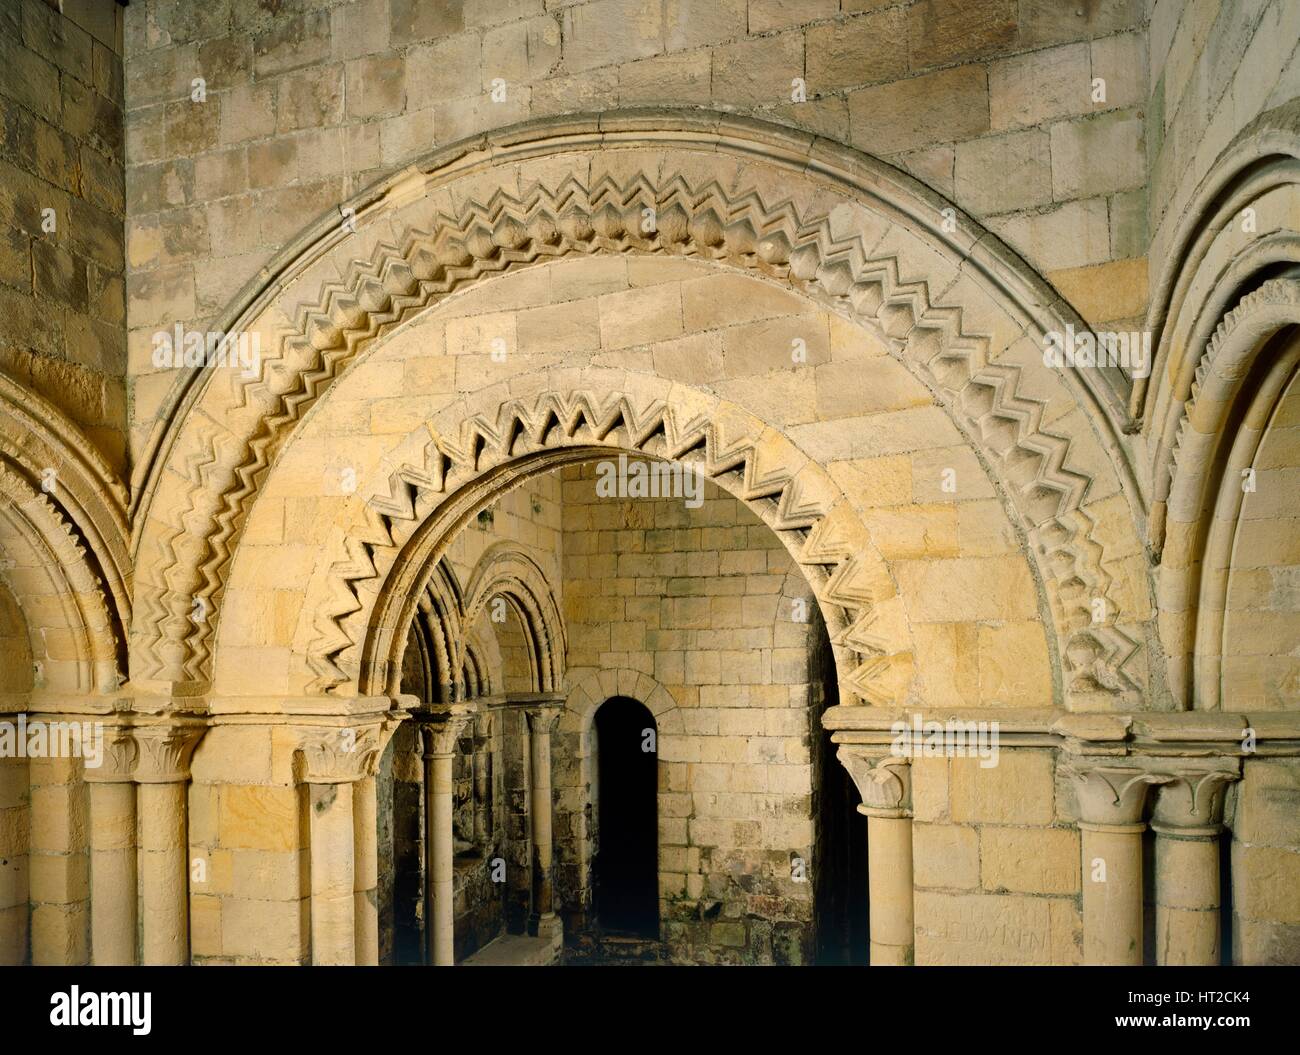 Archway à tête ronde avec chevron ornament dans la basse chapelle, château de Douvres, Kent, c2000s( ?). Artiste : Inconnu. Banque D'Images